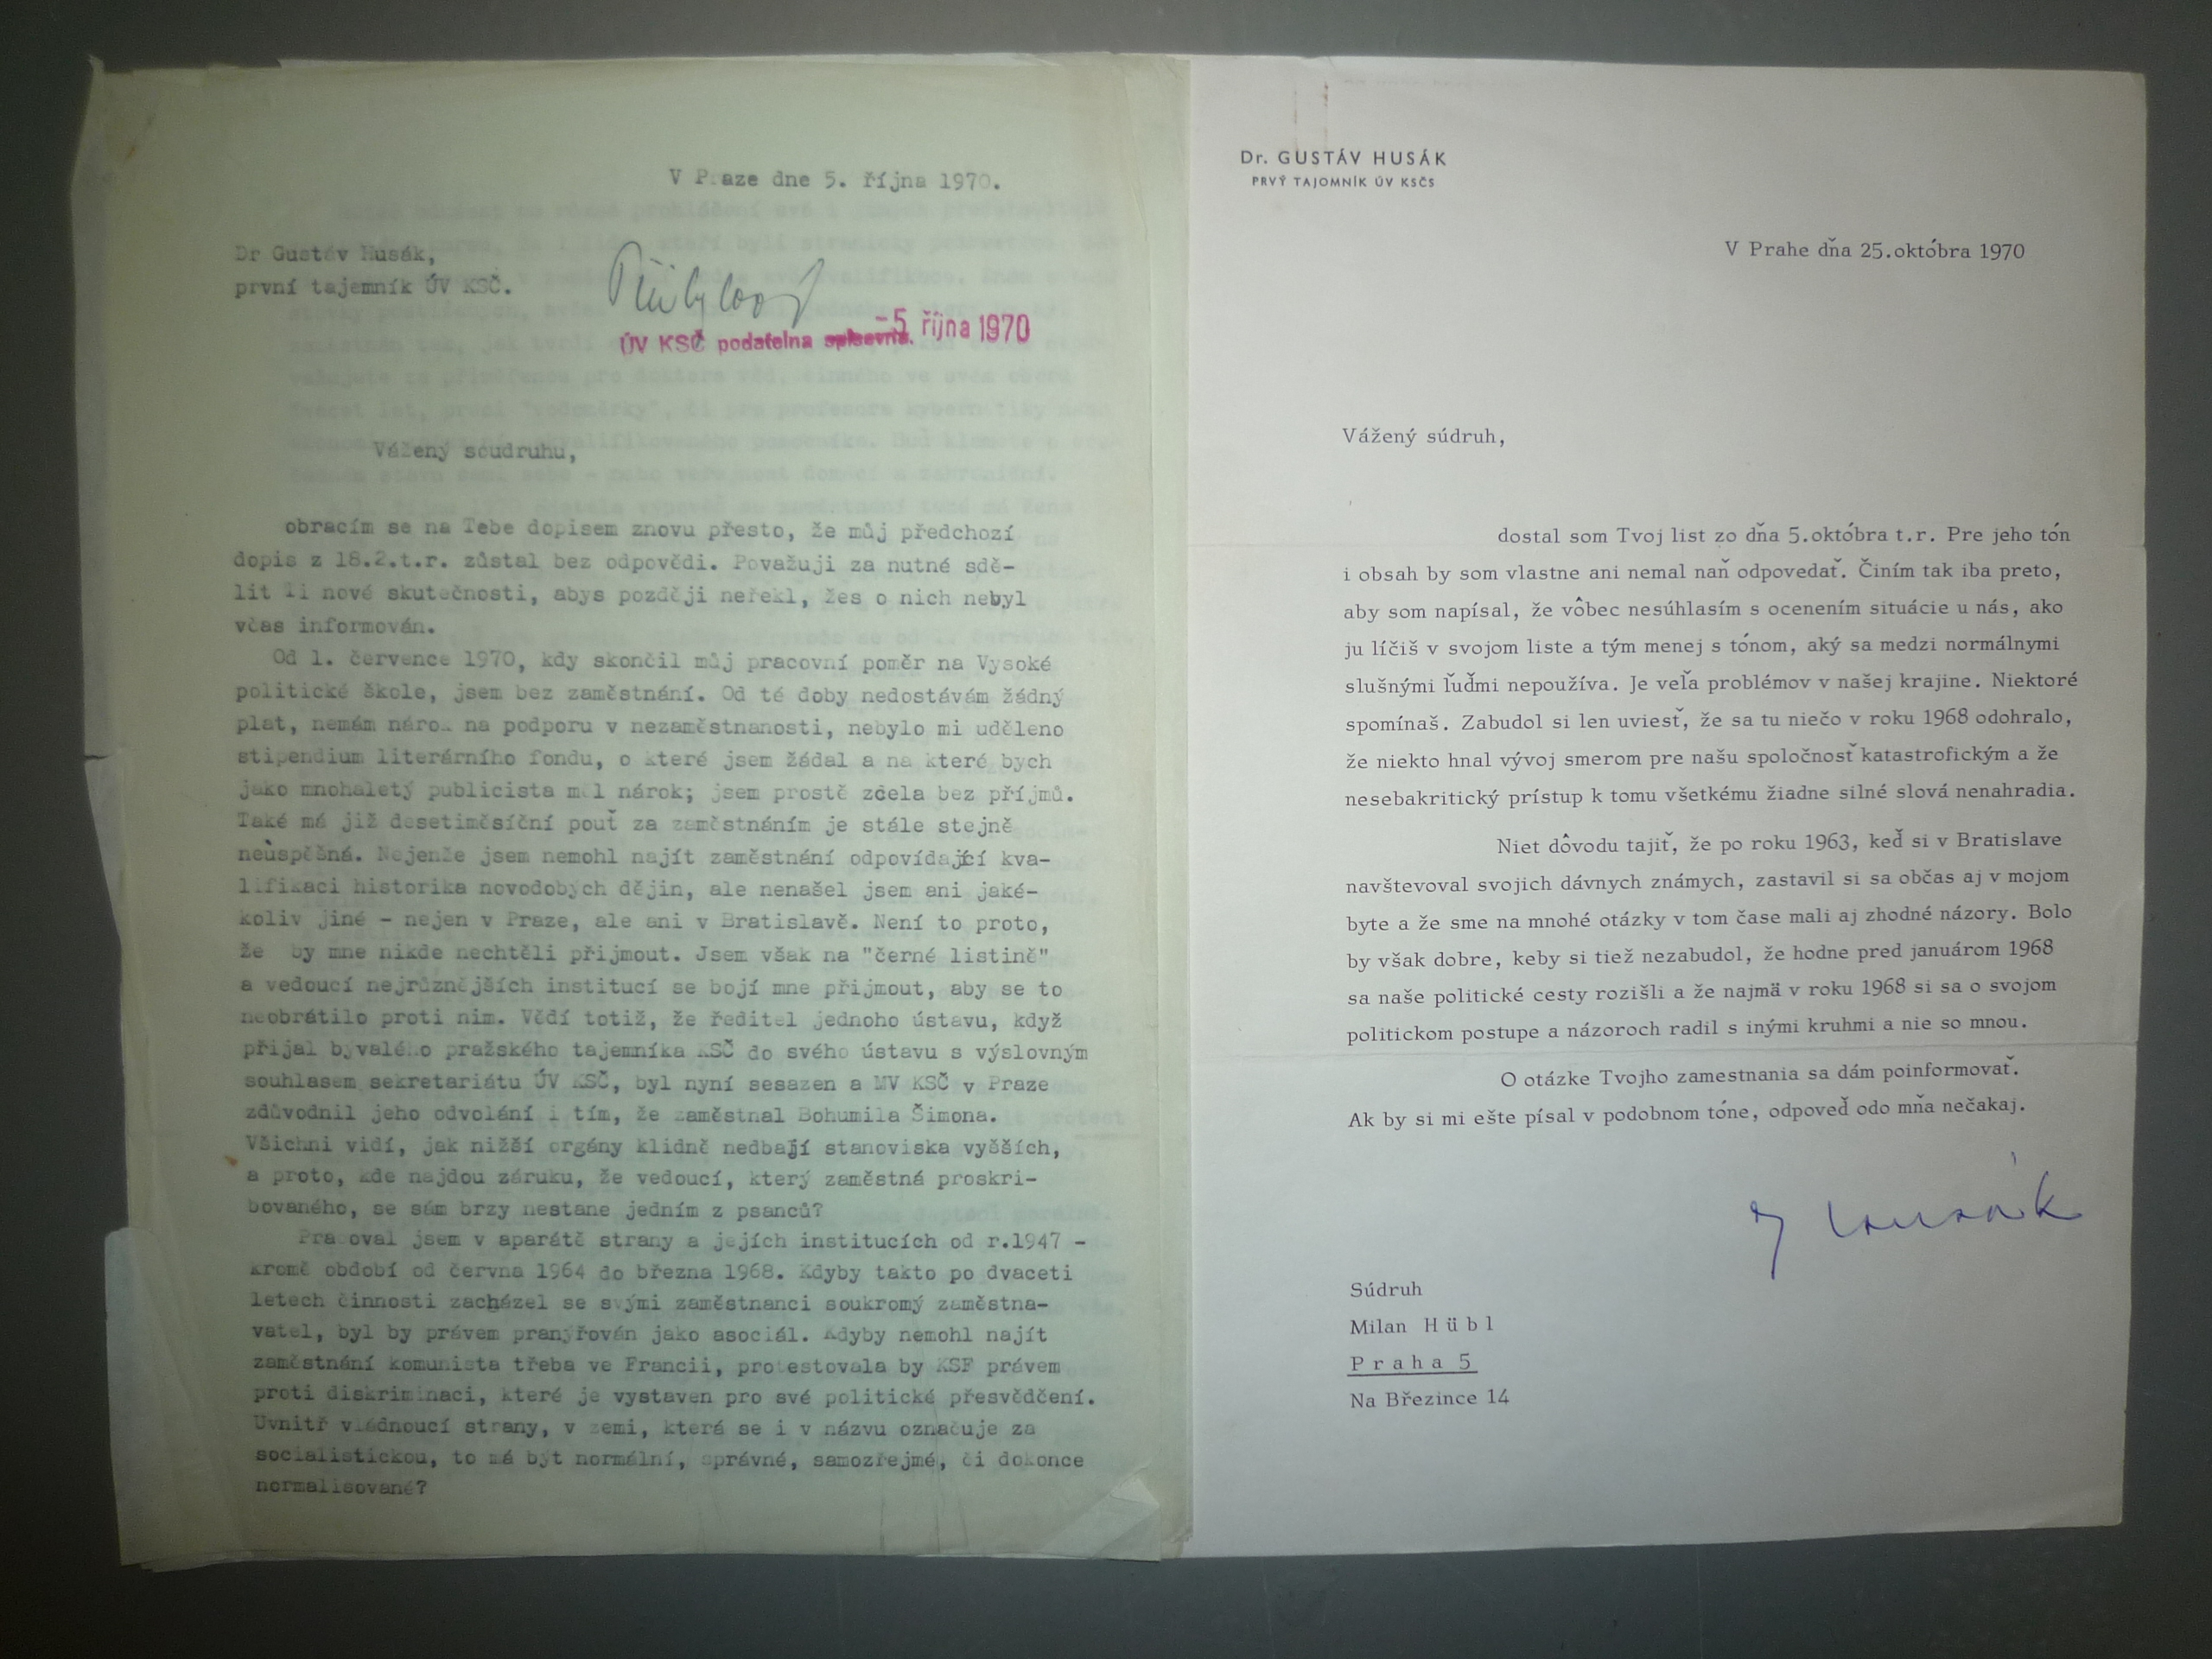 Letter from Milan Hübl to Gustáv Husák, 5 October 1970